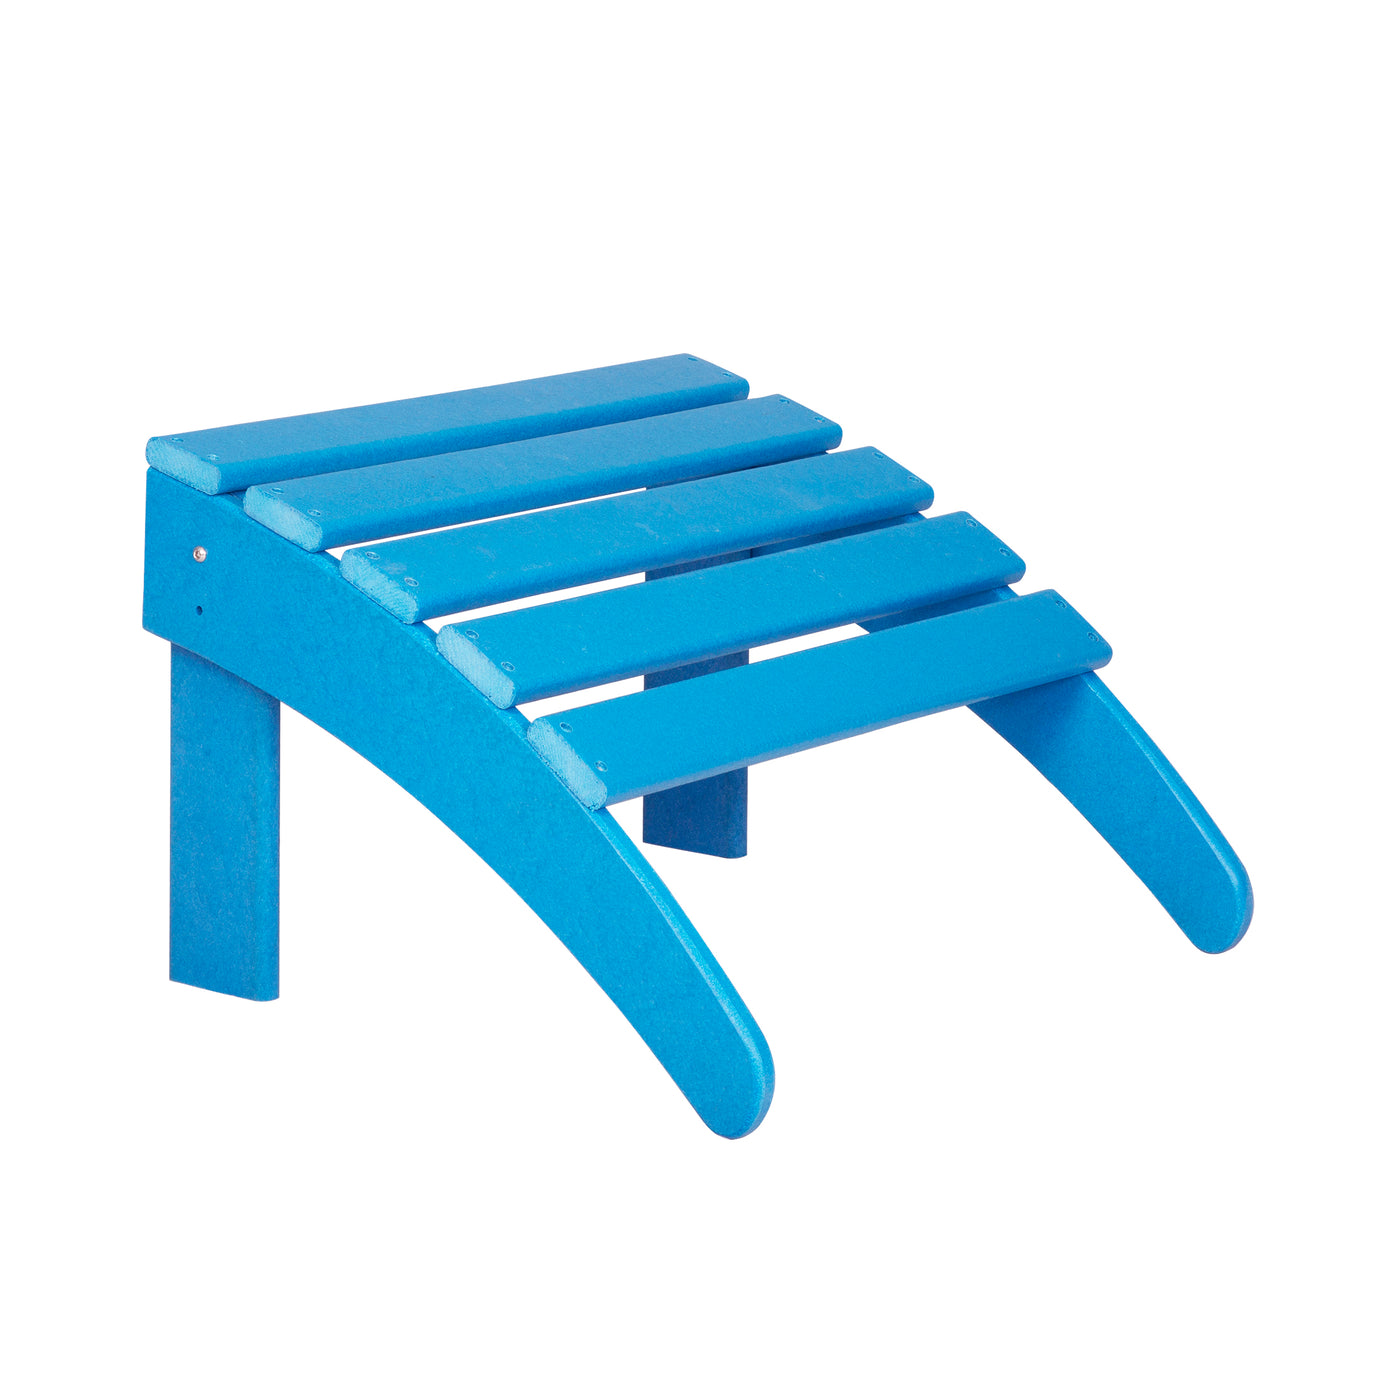 Malibu 2-Piece Classic Folding Adirondack Chair with Ottoman Set